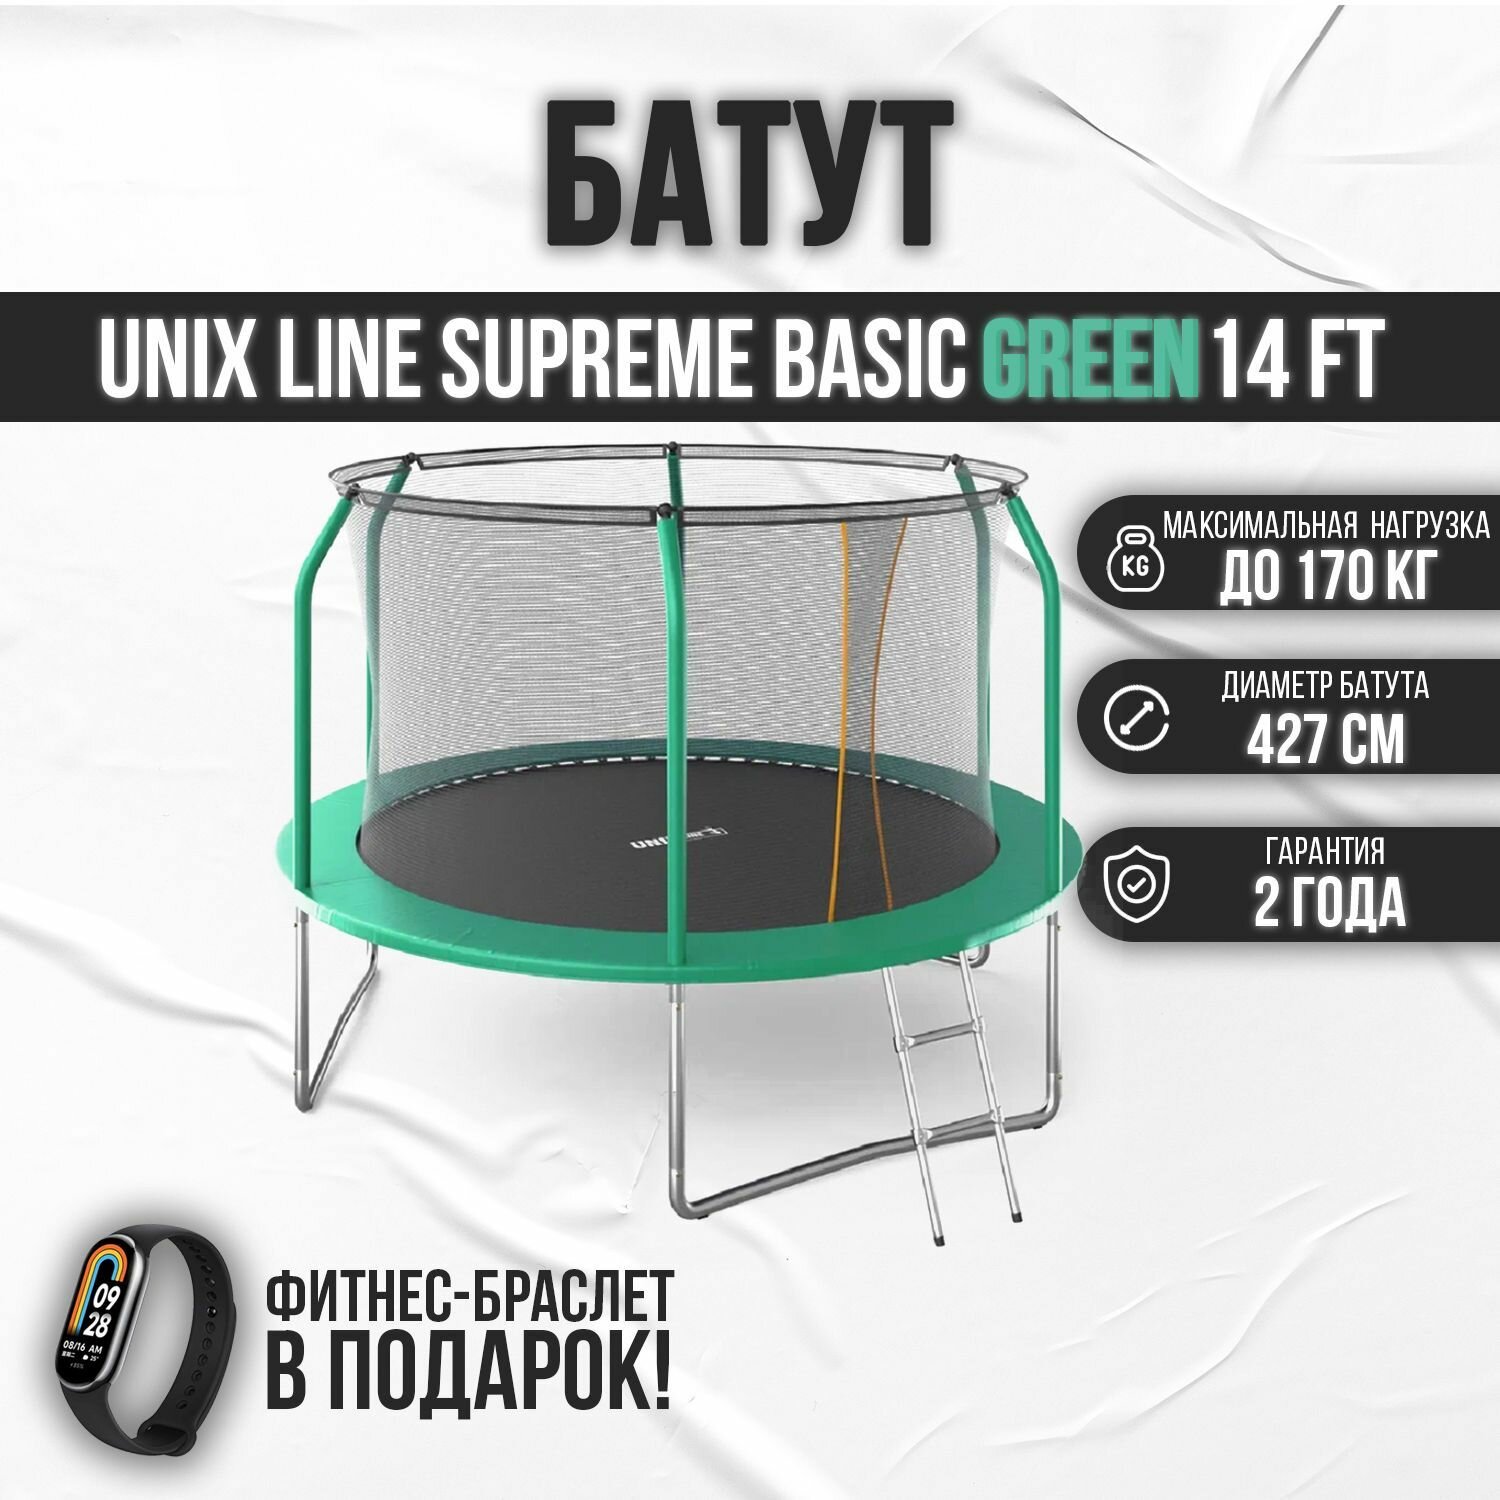 Батут UNIX Line SUPREME BASIC 14 ft green, диаметр 427 см, до 160 кг, с внутренней защитной сетью, в комплекте лестница